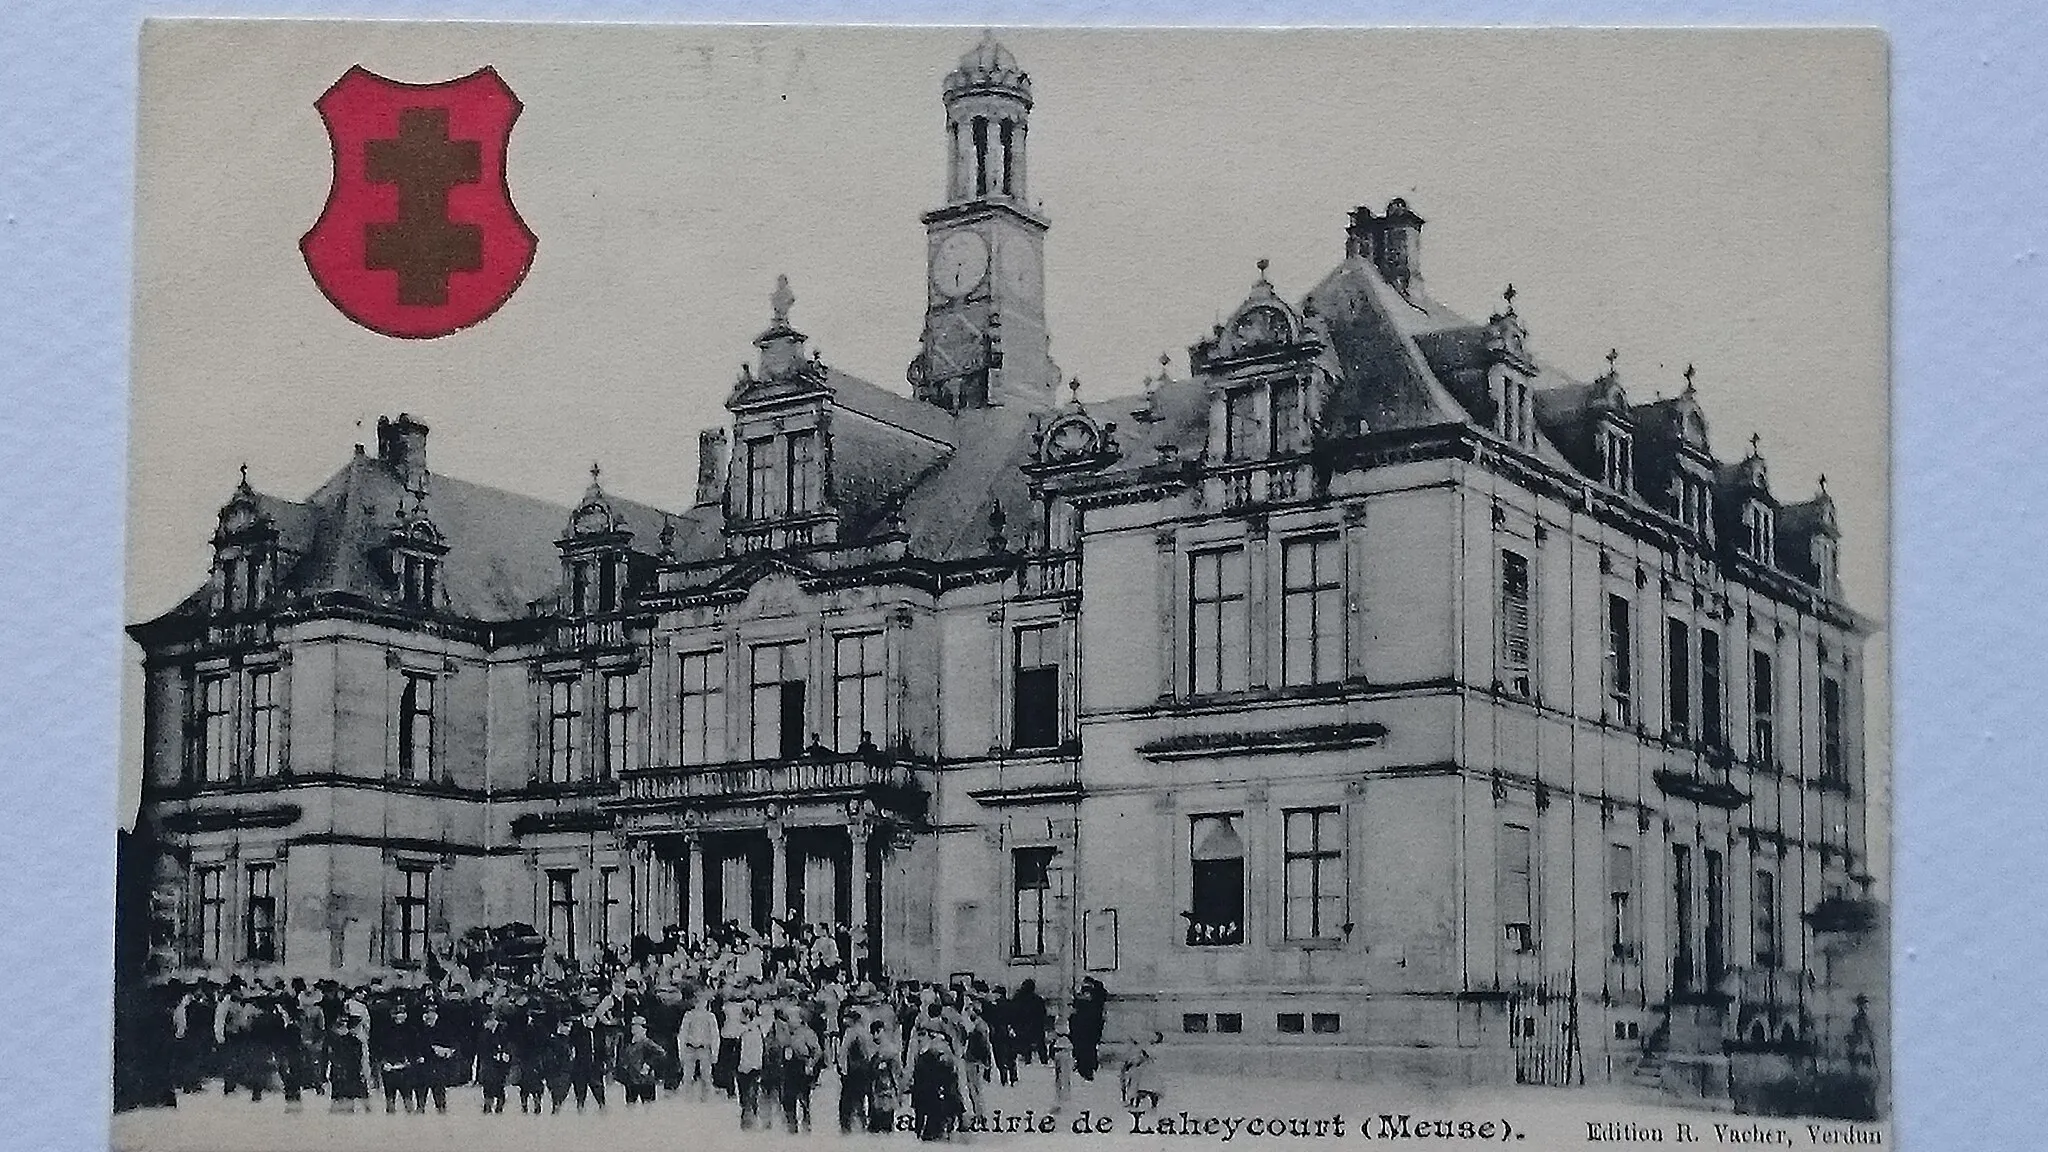 Photo showing: La mairie de Laheycourt avant sa destruction partielle pendant la guerre 1914-1918;
Carte postale d'avant 1914